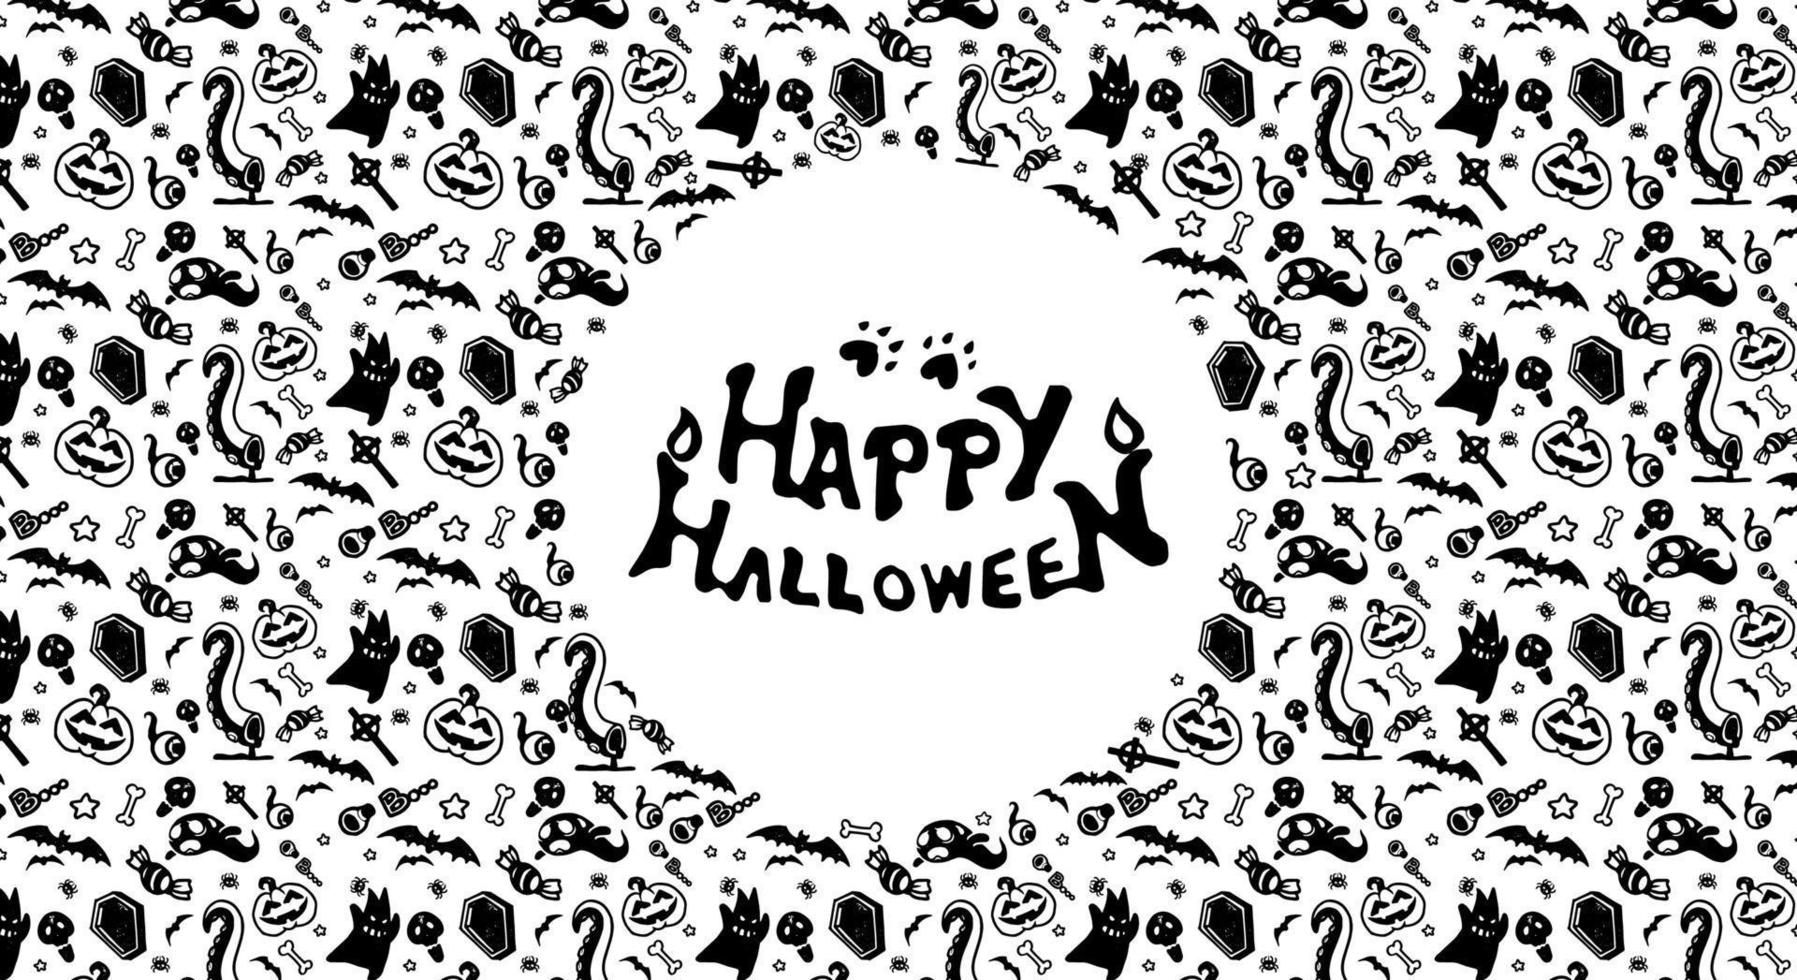 patrón festivo de halloween sin fisuras. fondos interminables con calabazas, calaveras, murciélagos, arañas, fantasmas, huesos, caramelos, telarañas y muchos más. vector